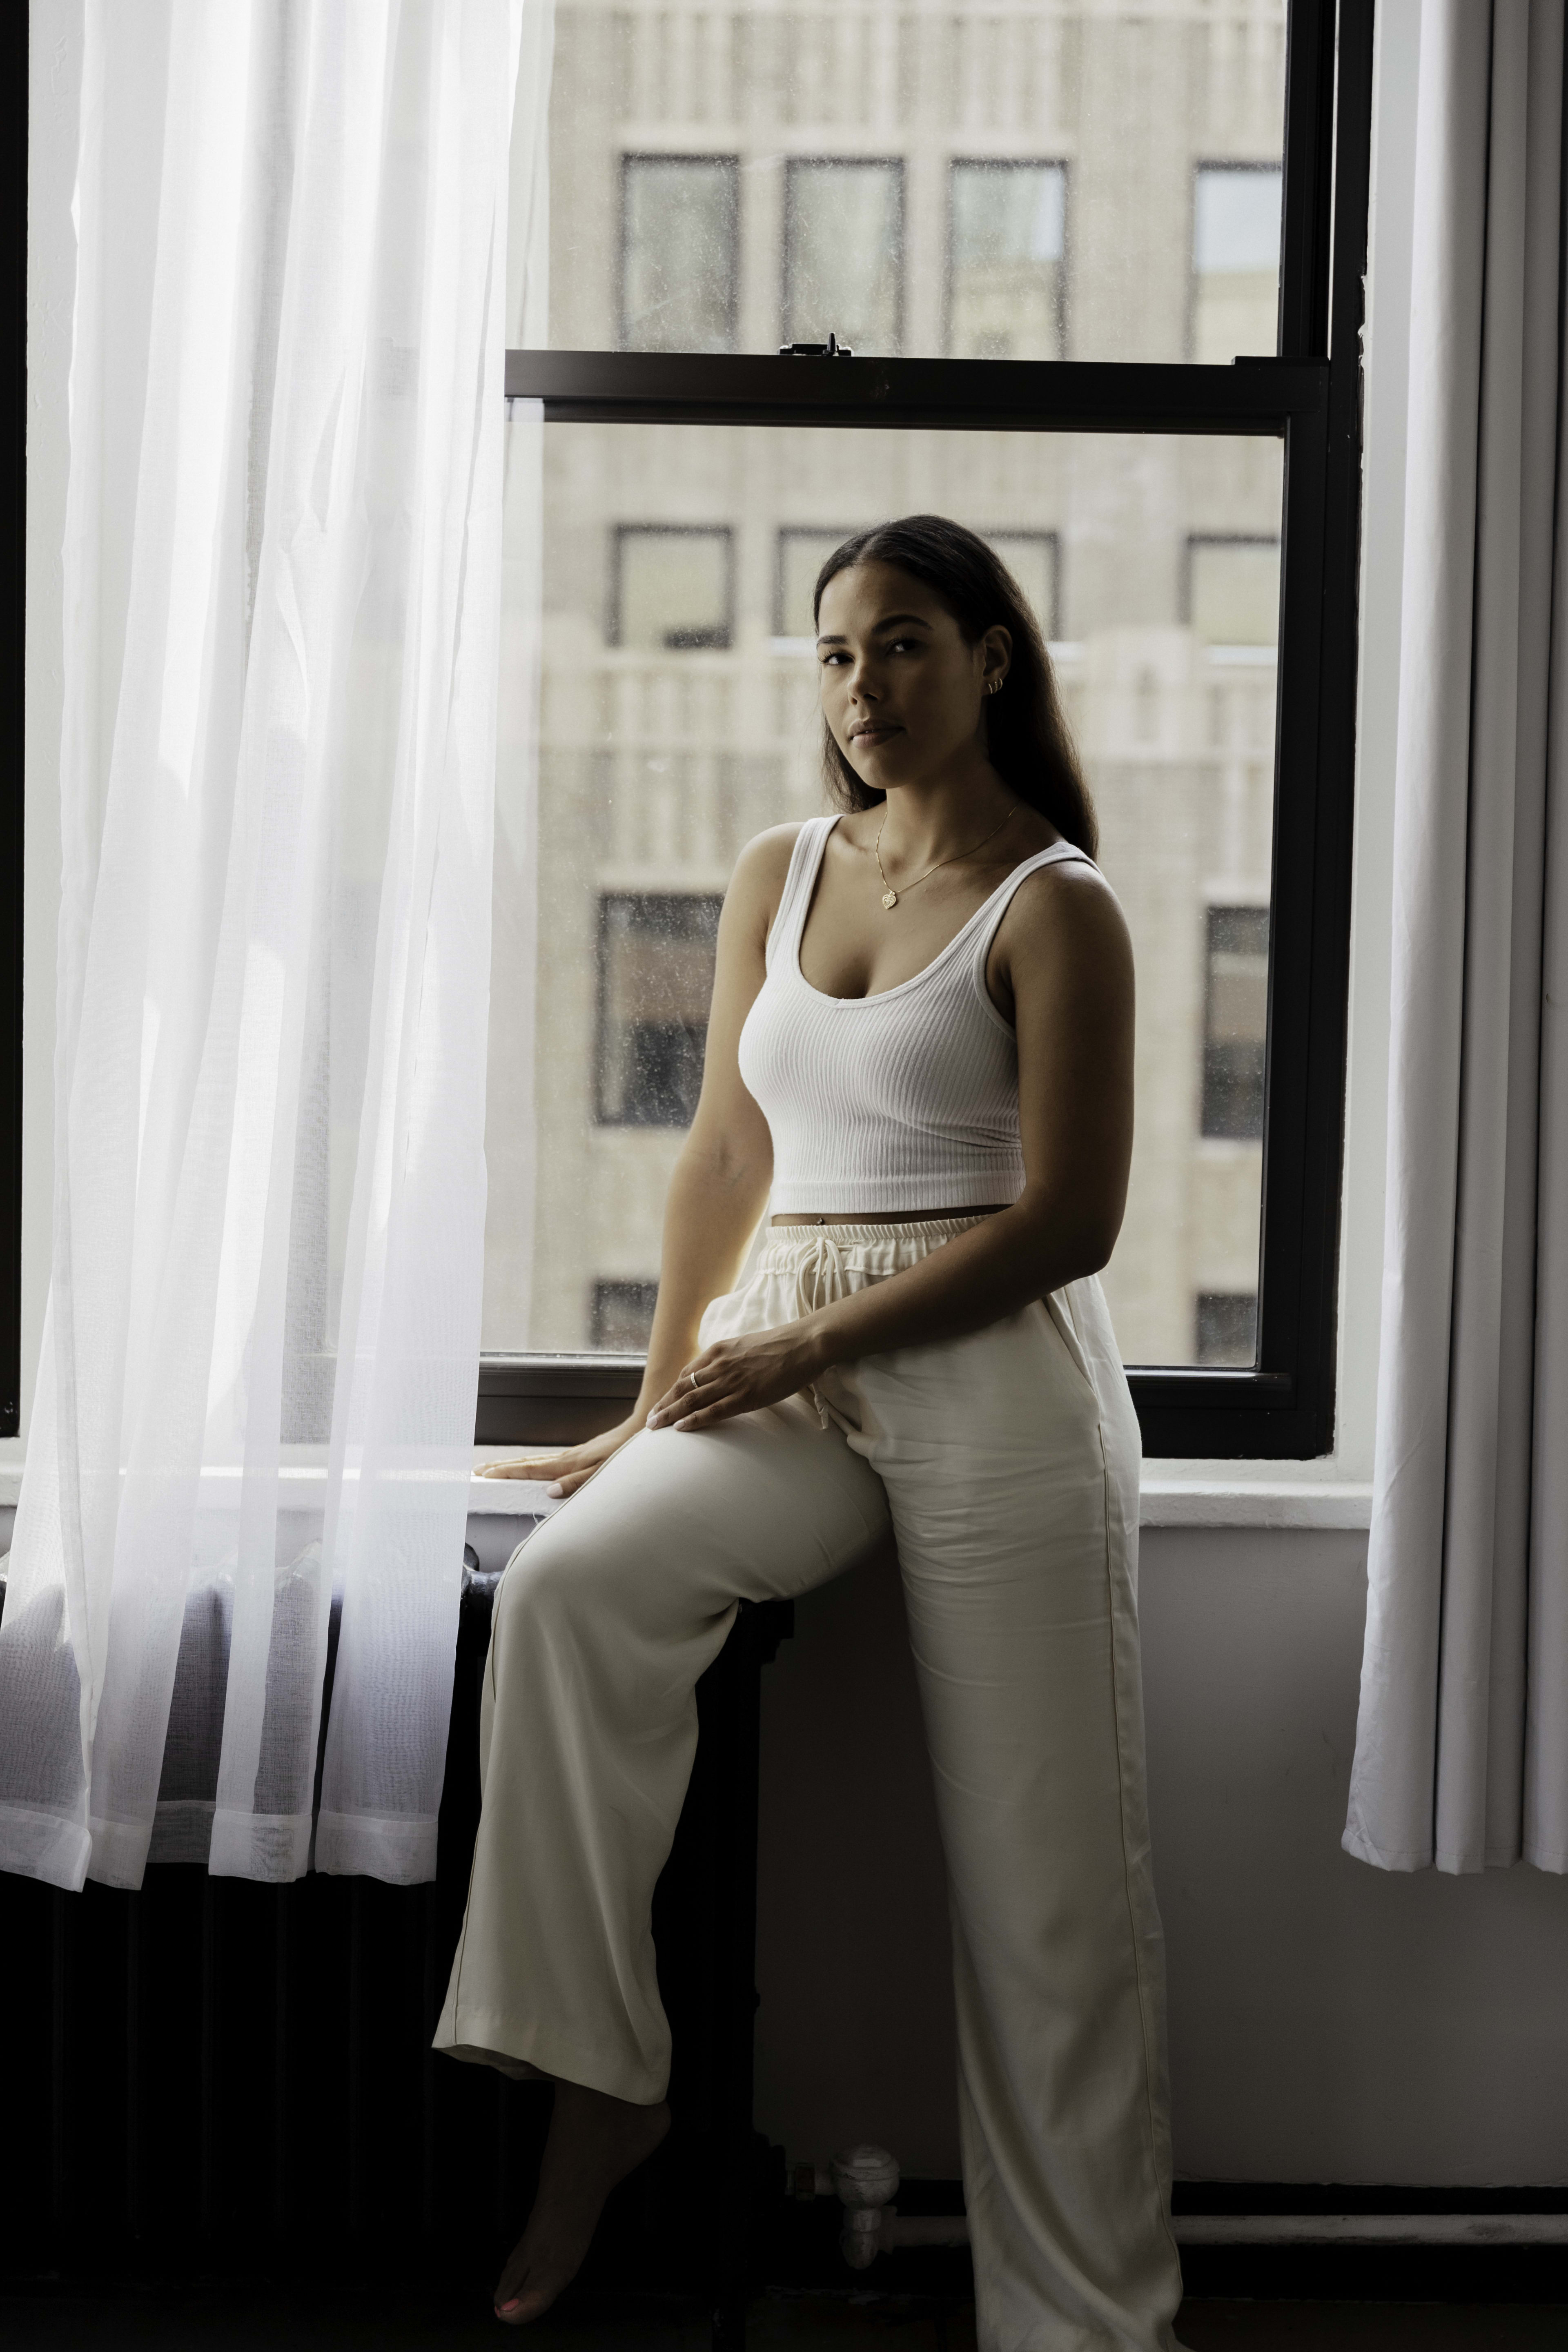 Ein Mode-Fotoshooting mit einer Frau auf einem minimalistischen weißen Fensterbrett.